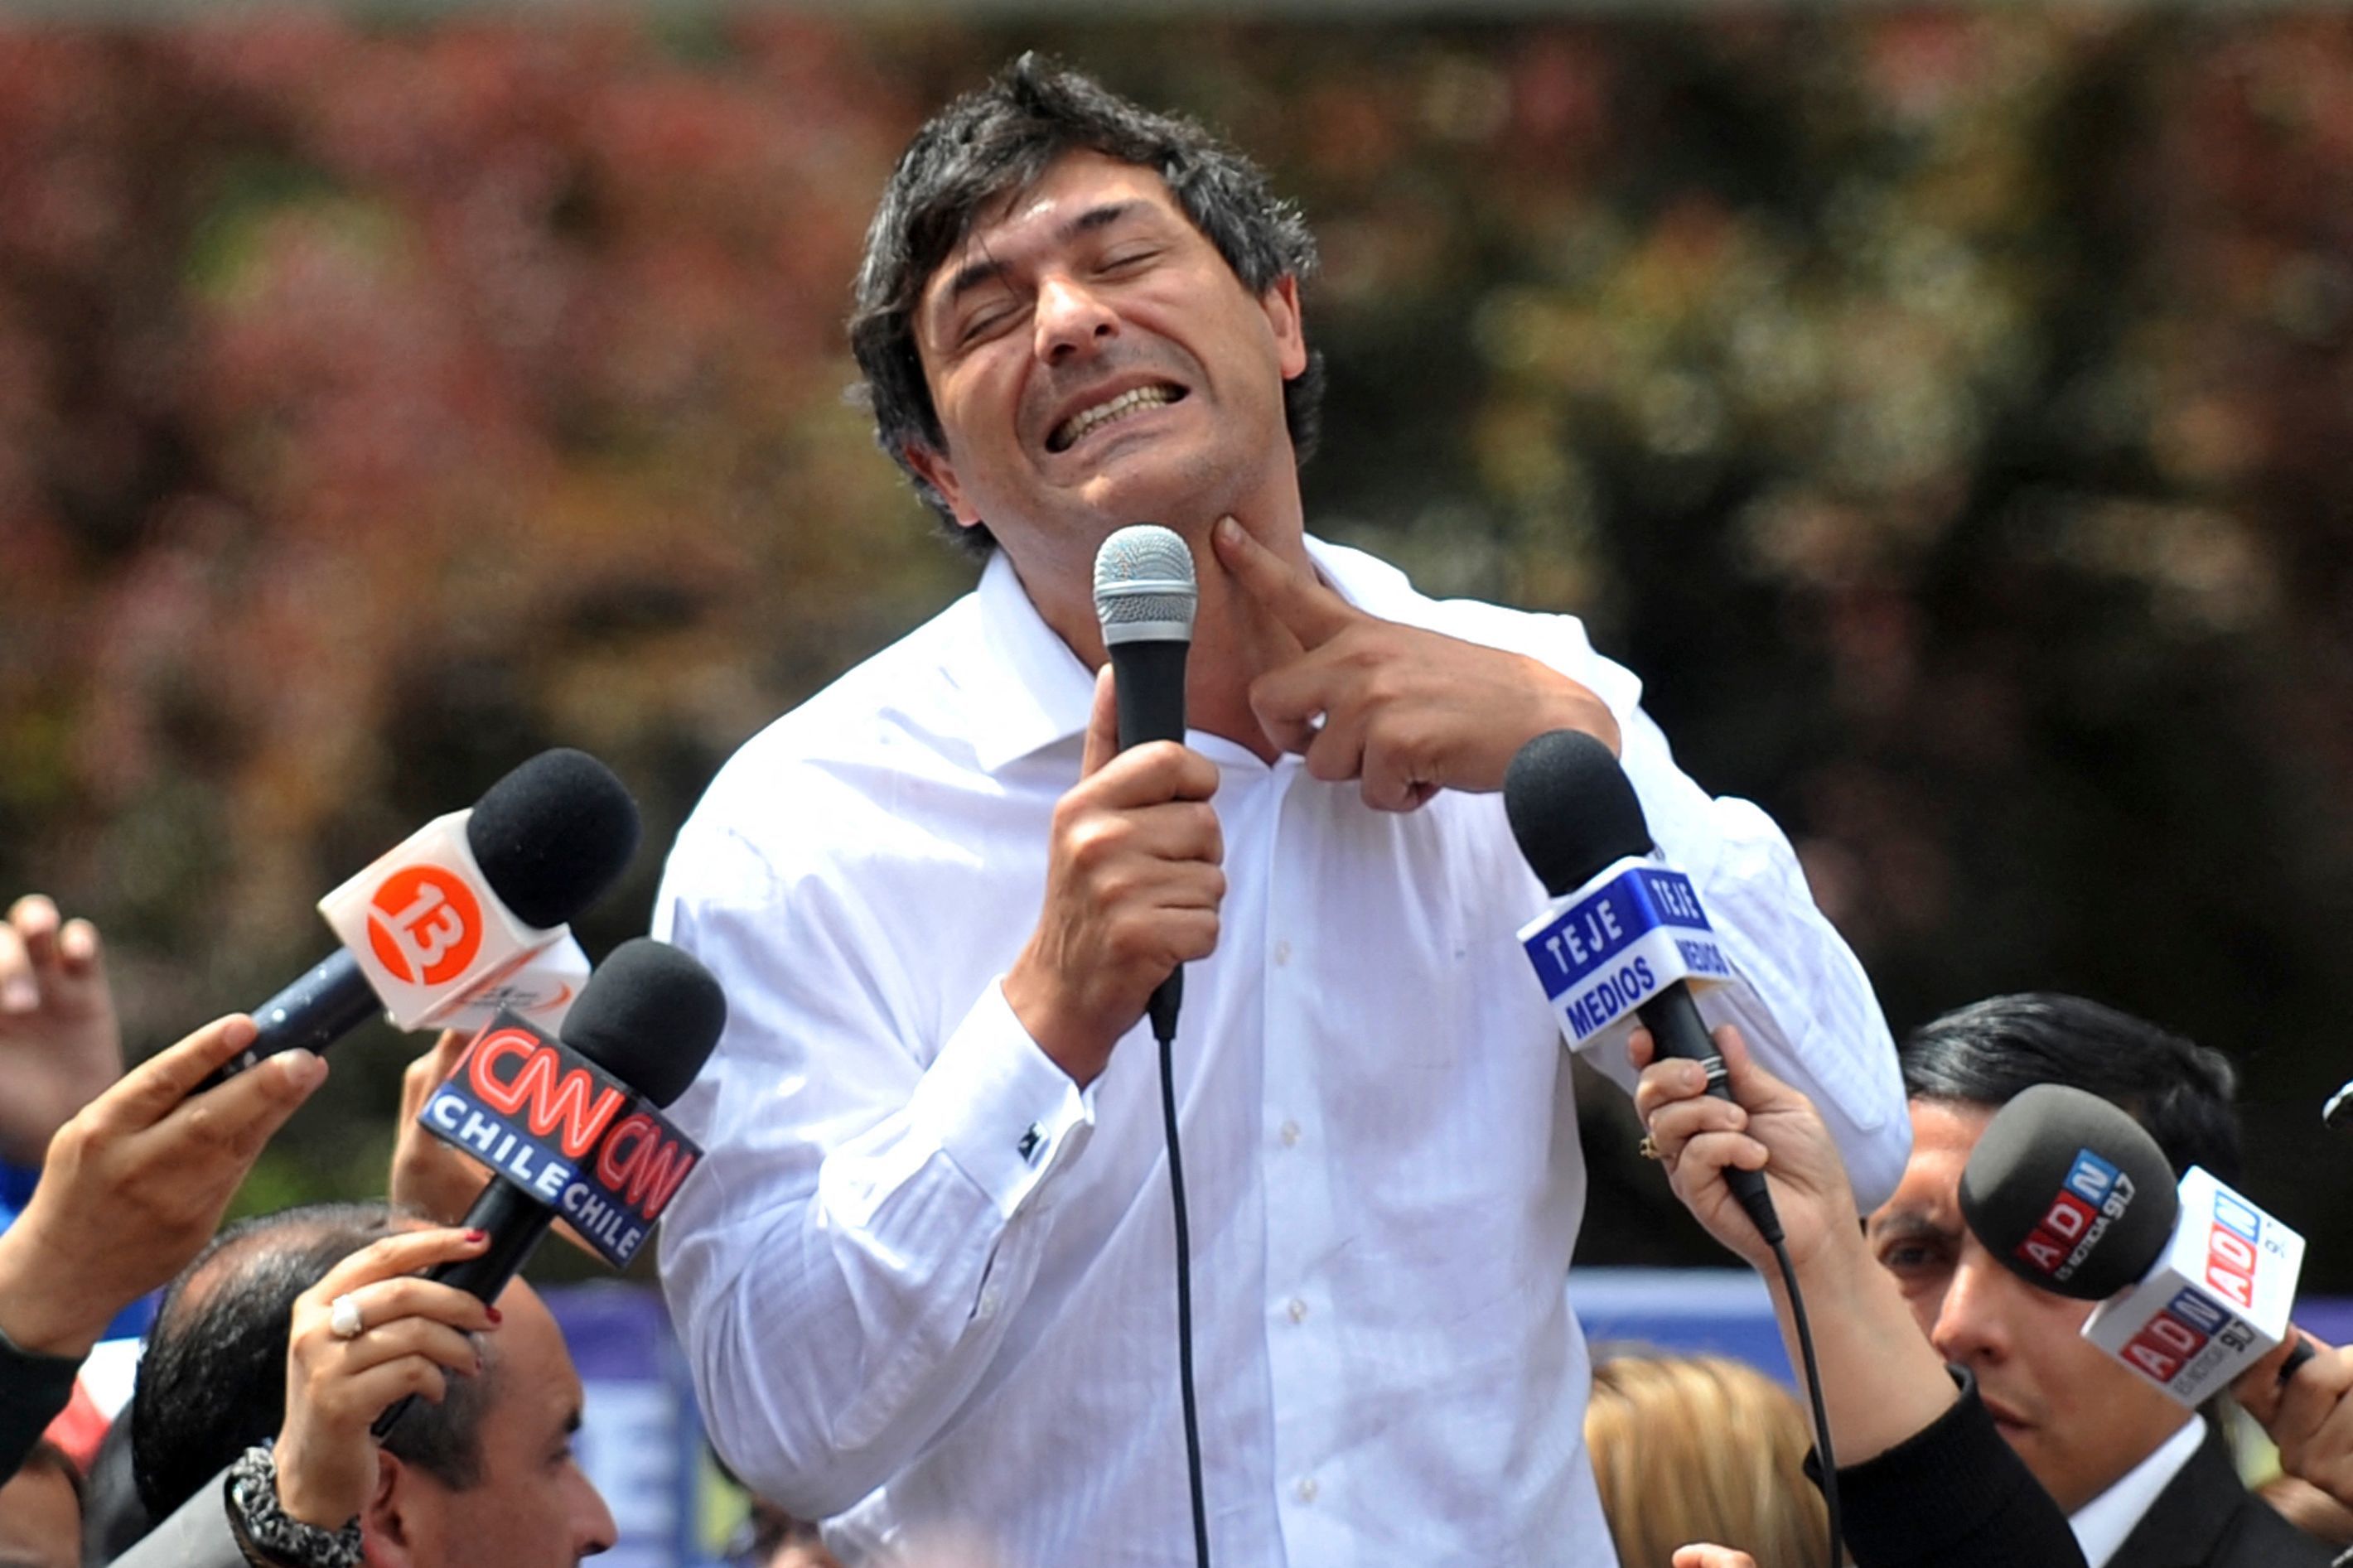 El candidato Franco Parisi en campaa.